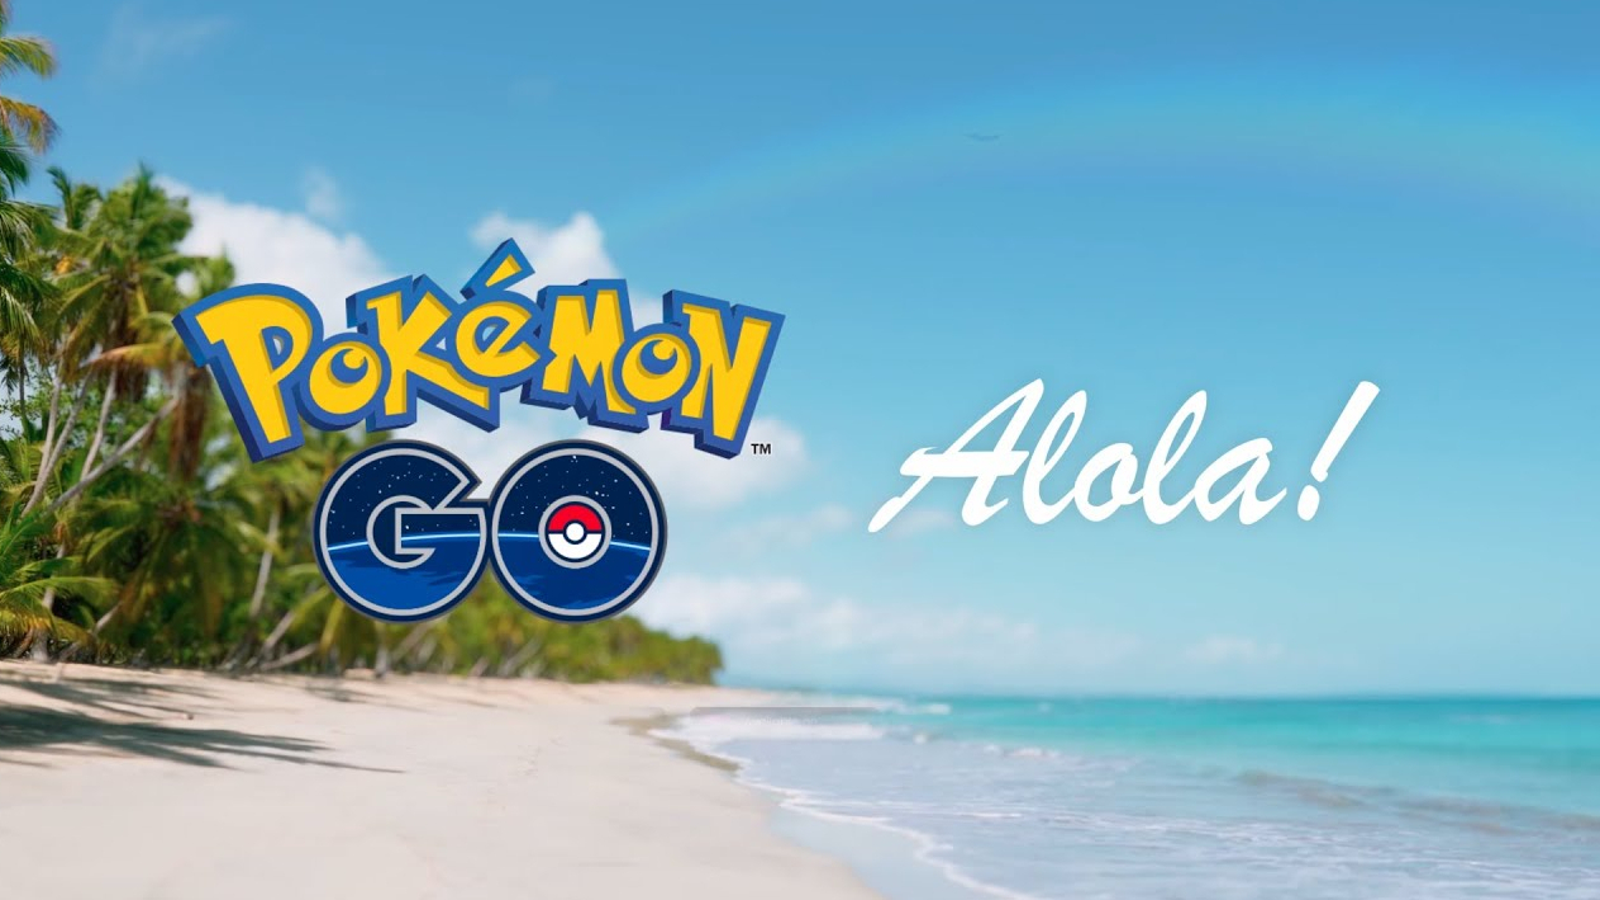 Pokémon Go's Alolan event detailed: Rowlet, Litten, Popplio among